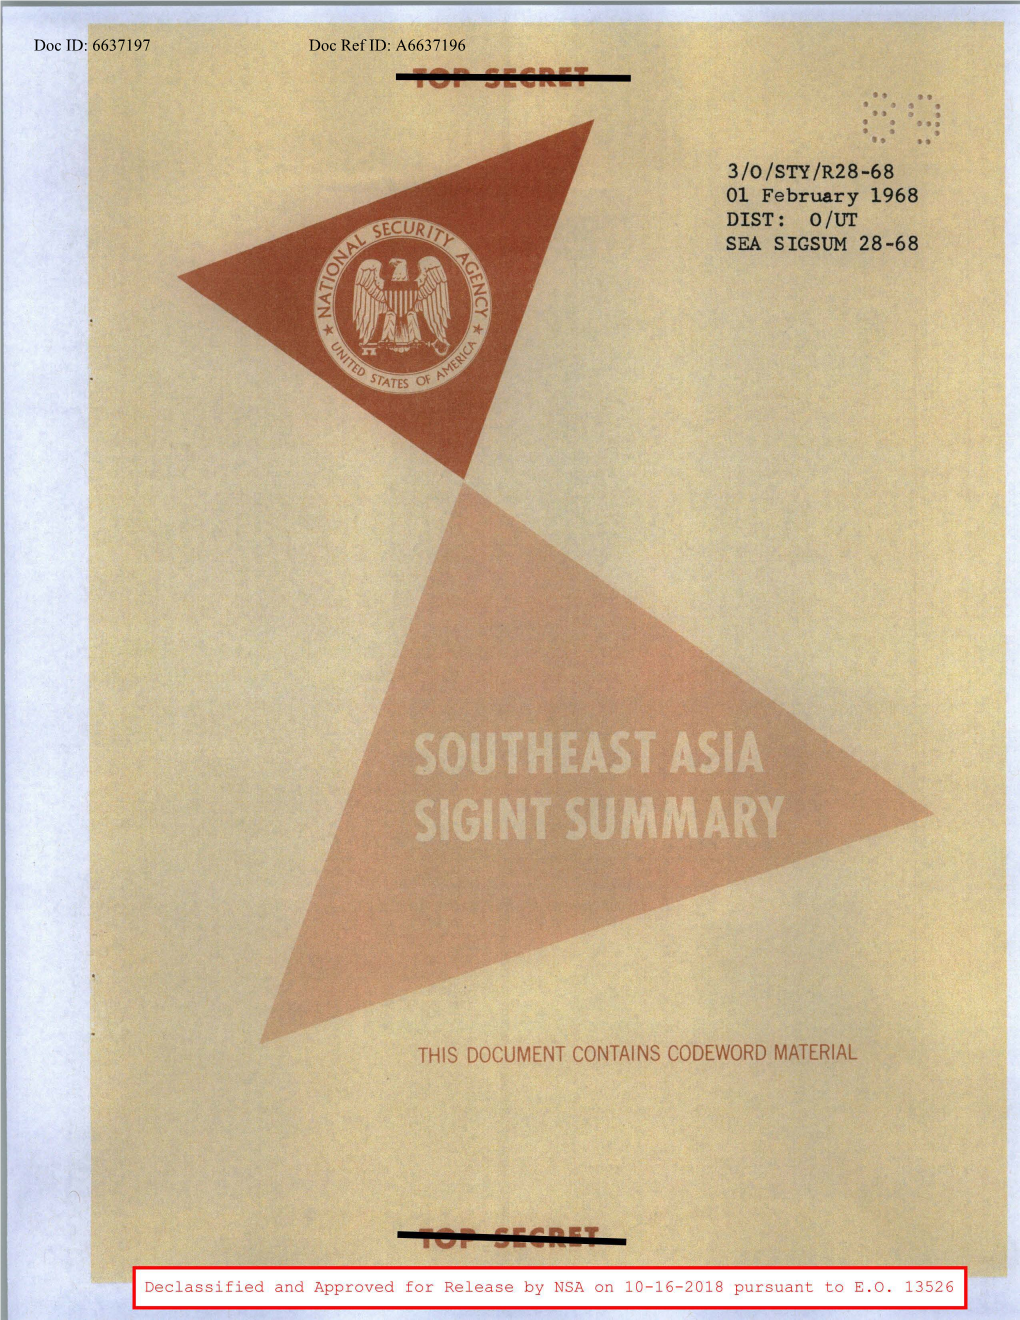 Southeast Asia SIGINT Summary, 1 February 1968